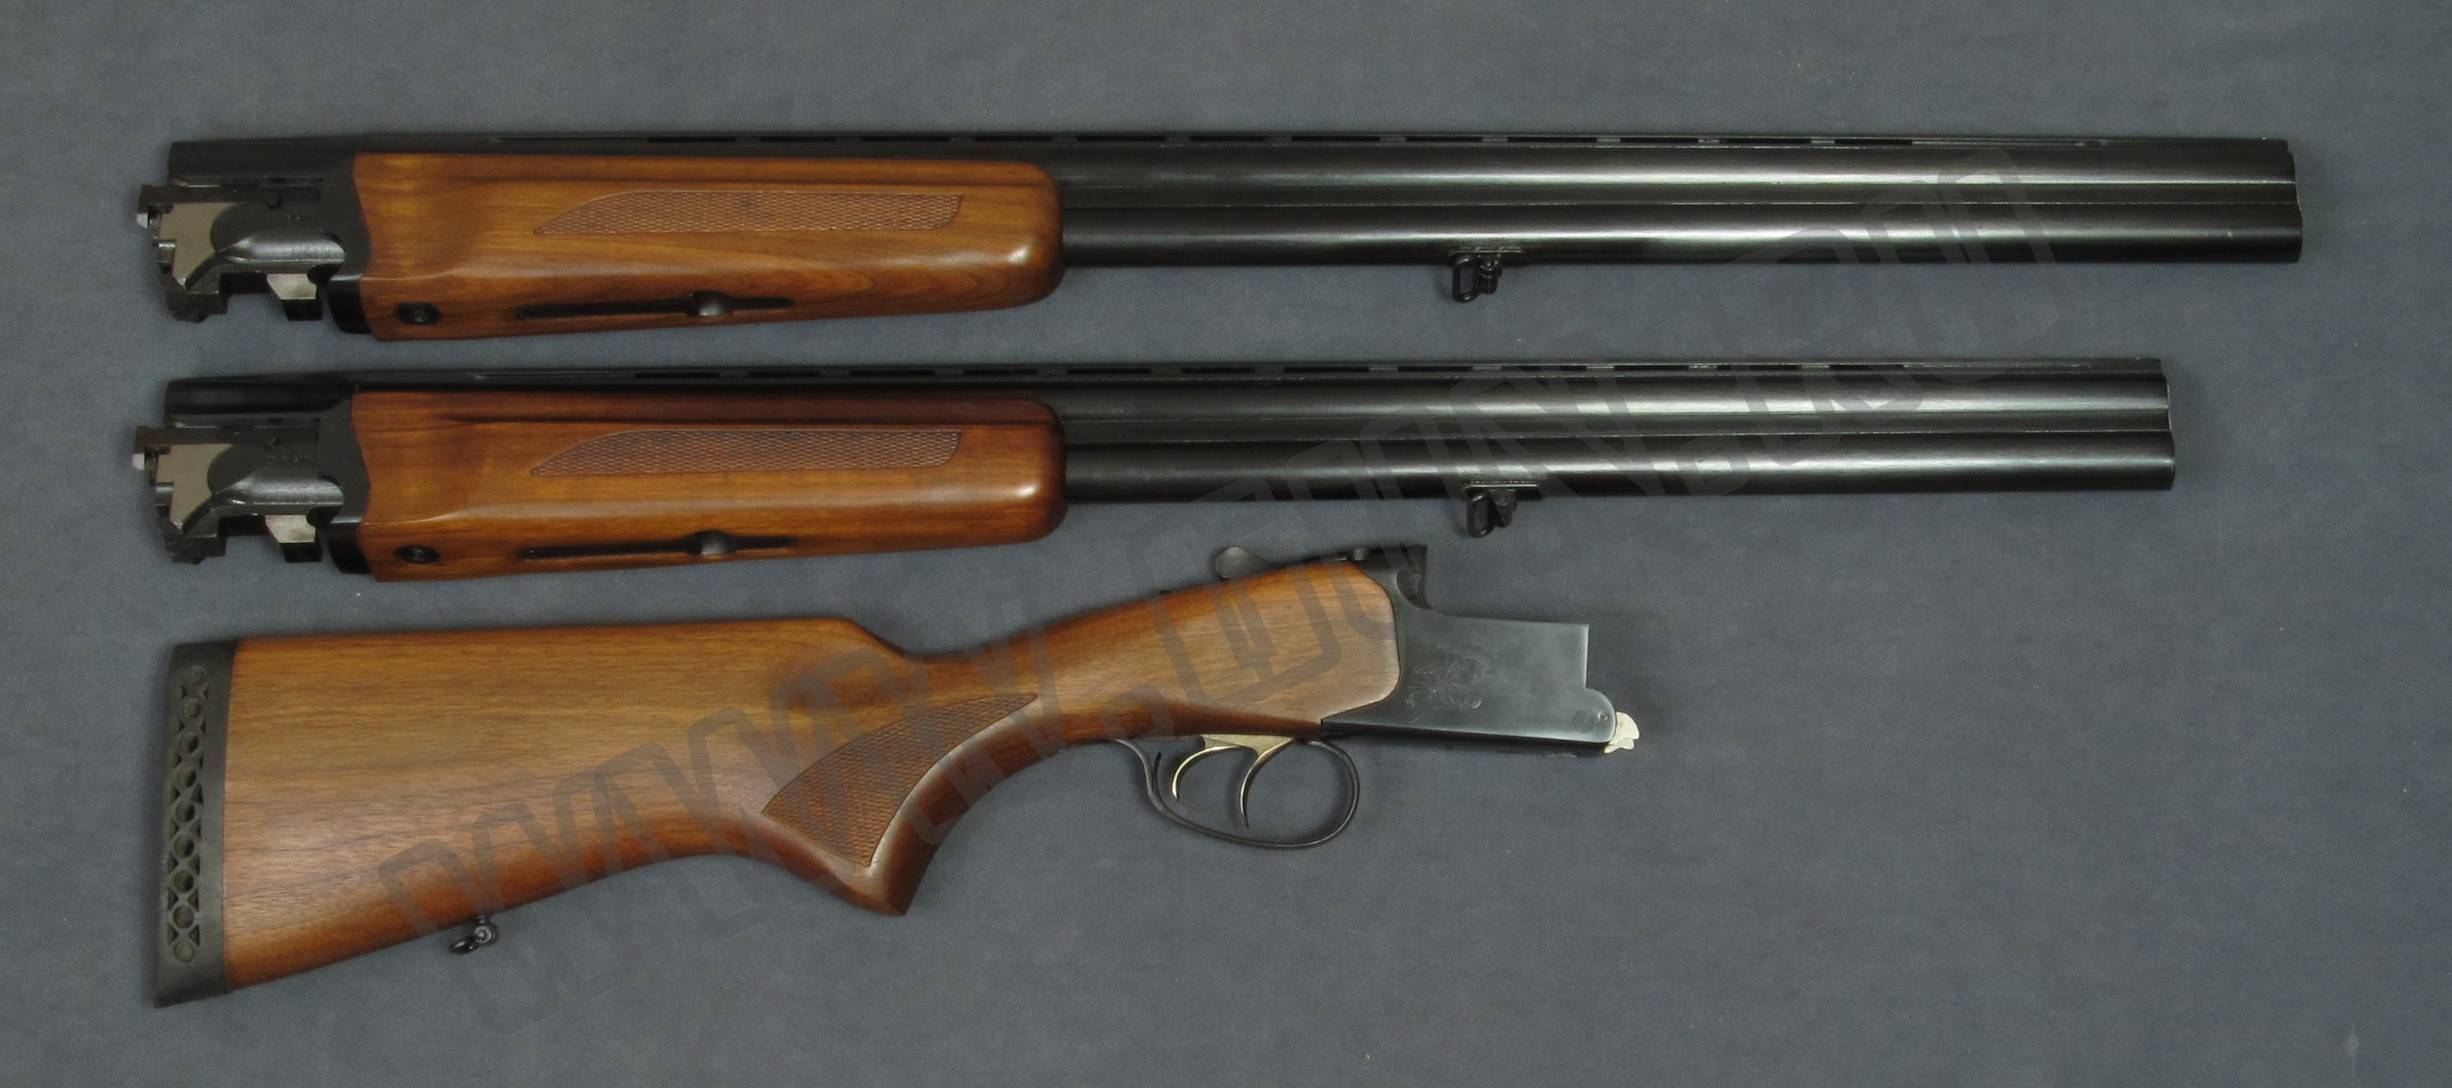 Охотничьи ружья: история развития от фитильных аркебуз до современных моделей